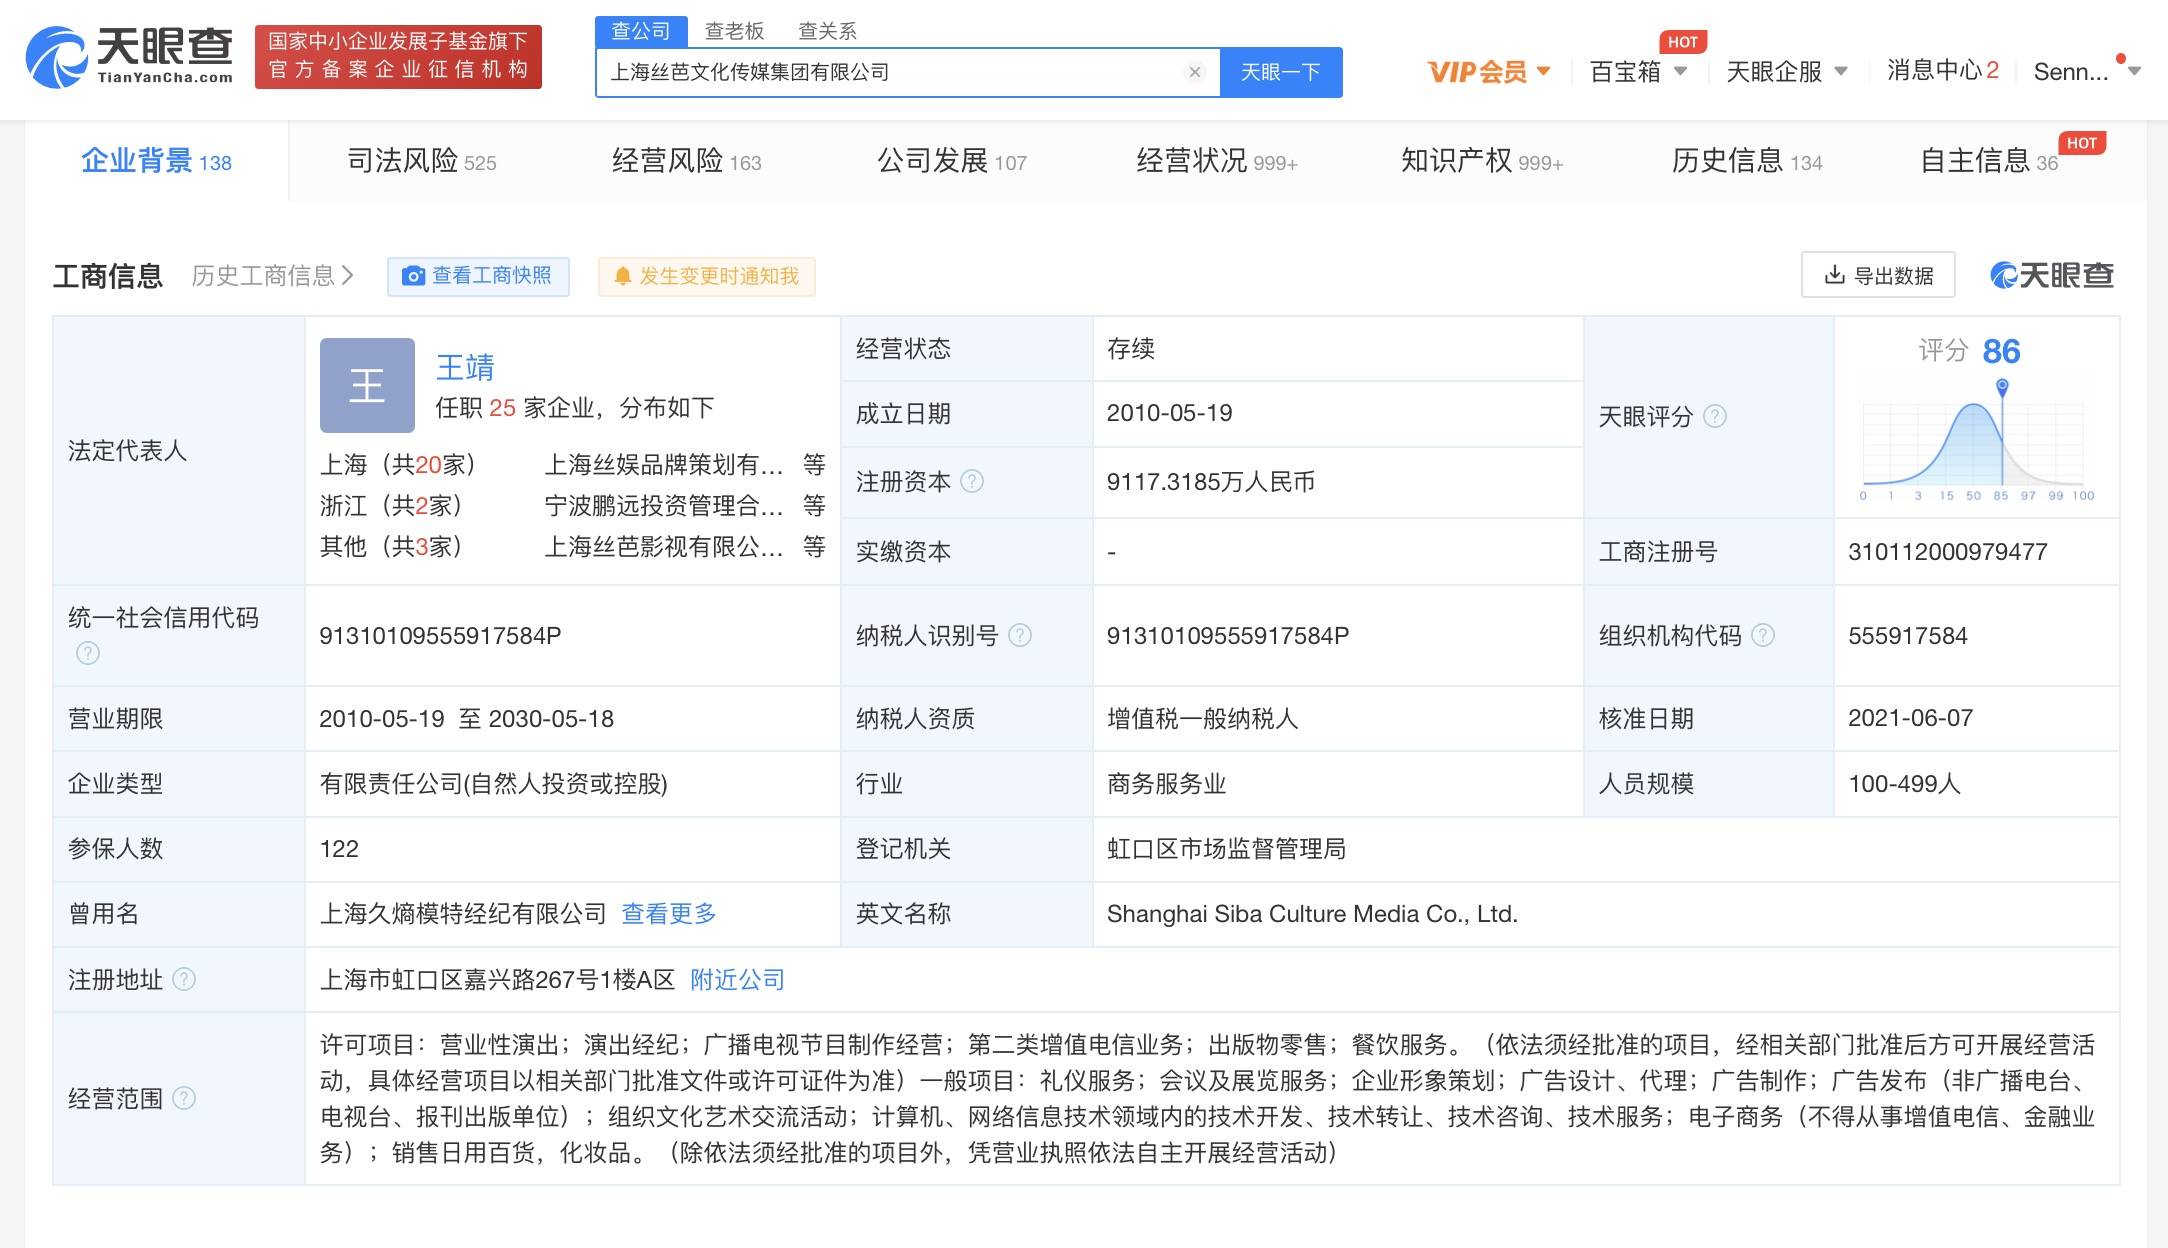 上海丝芭文化传媒集团有限公司与孔肖吟相关合同纠纷新增开庭公告